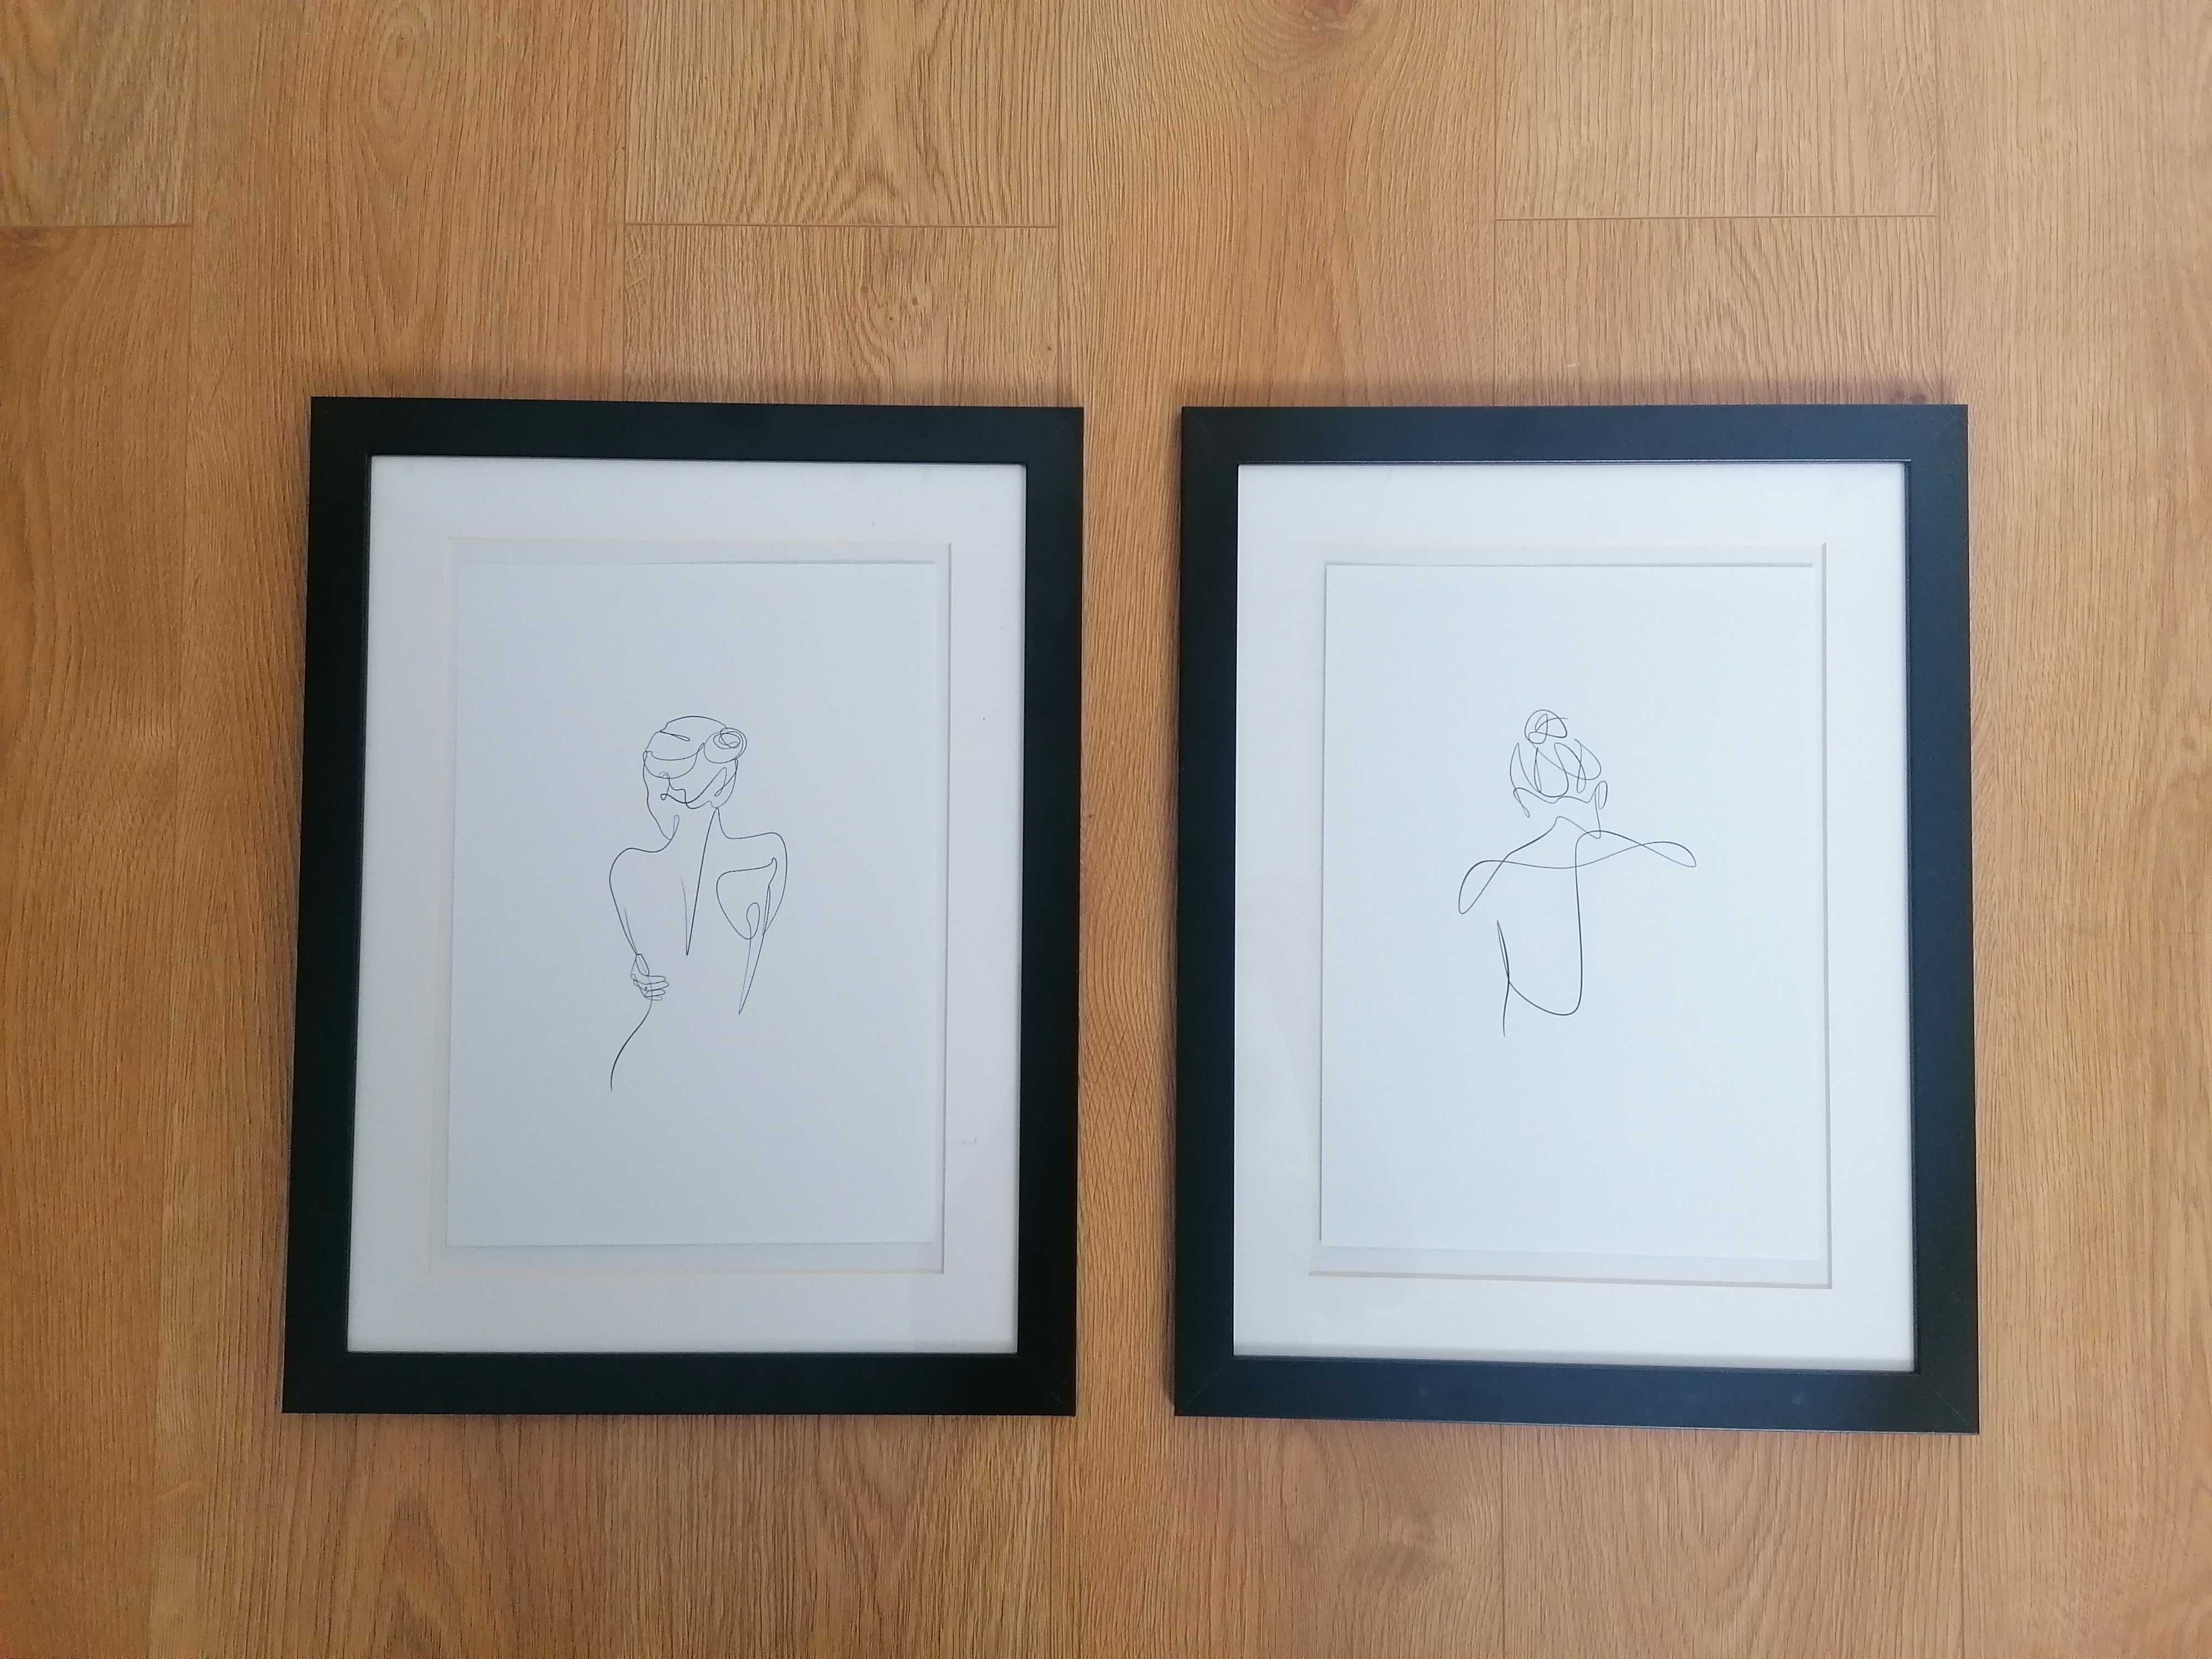 Obraz grafika lineart kobieta ramka czarna 30x40 Ikea minimalistyczny